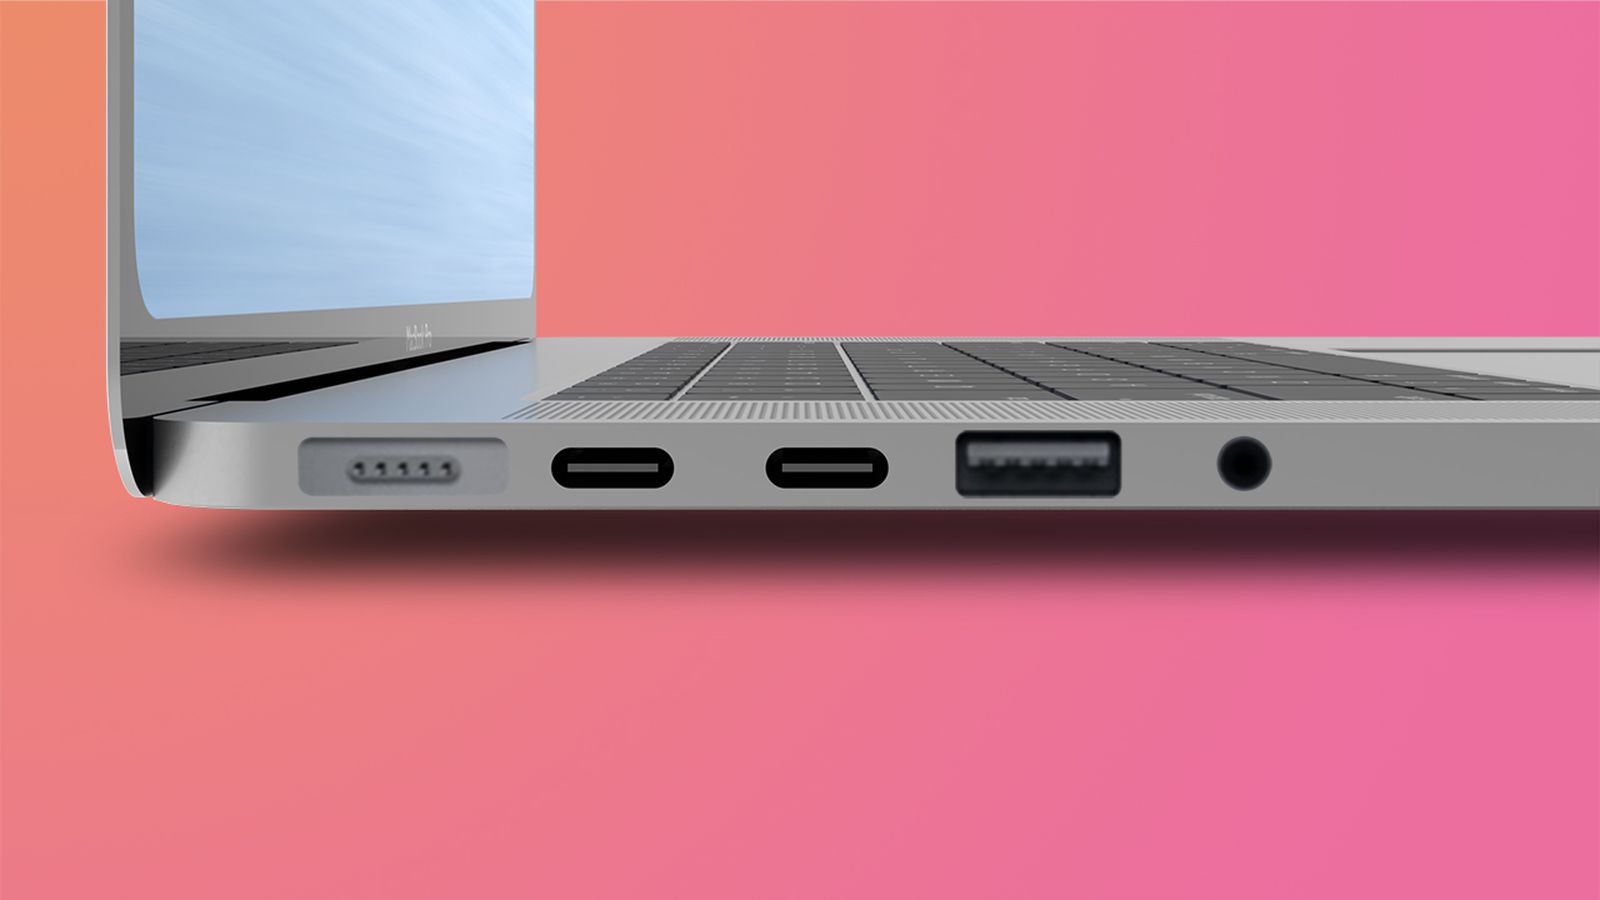 Sự kiện ra mắt sản phẩm mới của Apple đêm nay sẽ có những gì: MacBook Pro thiết kế mới, Mac mini, AirPods 3...? - Ảnh 4.